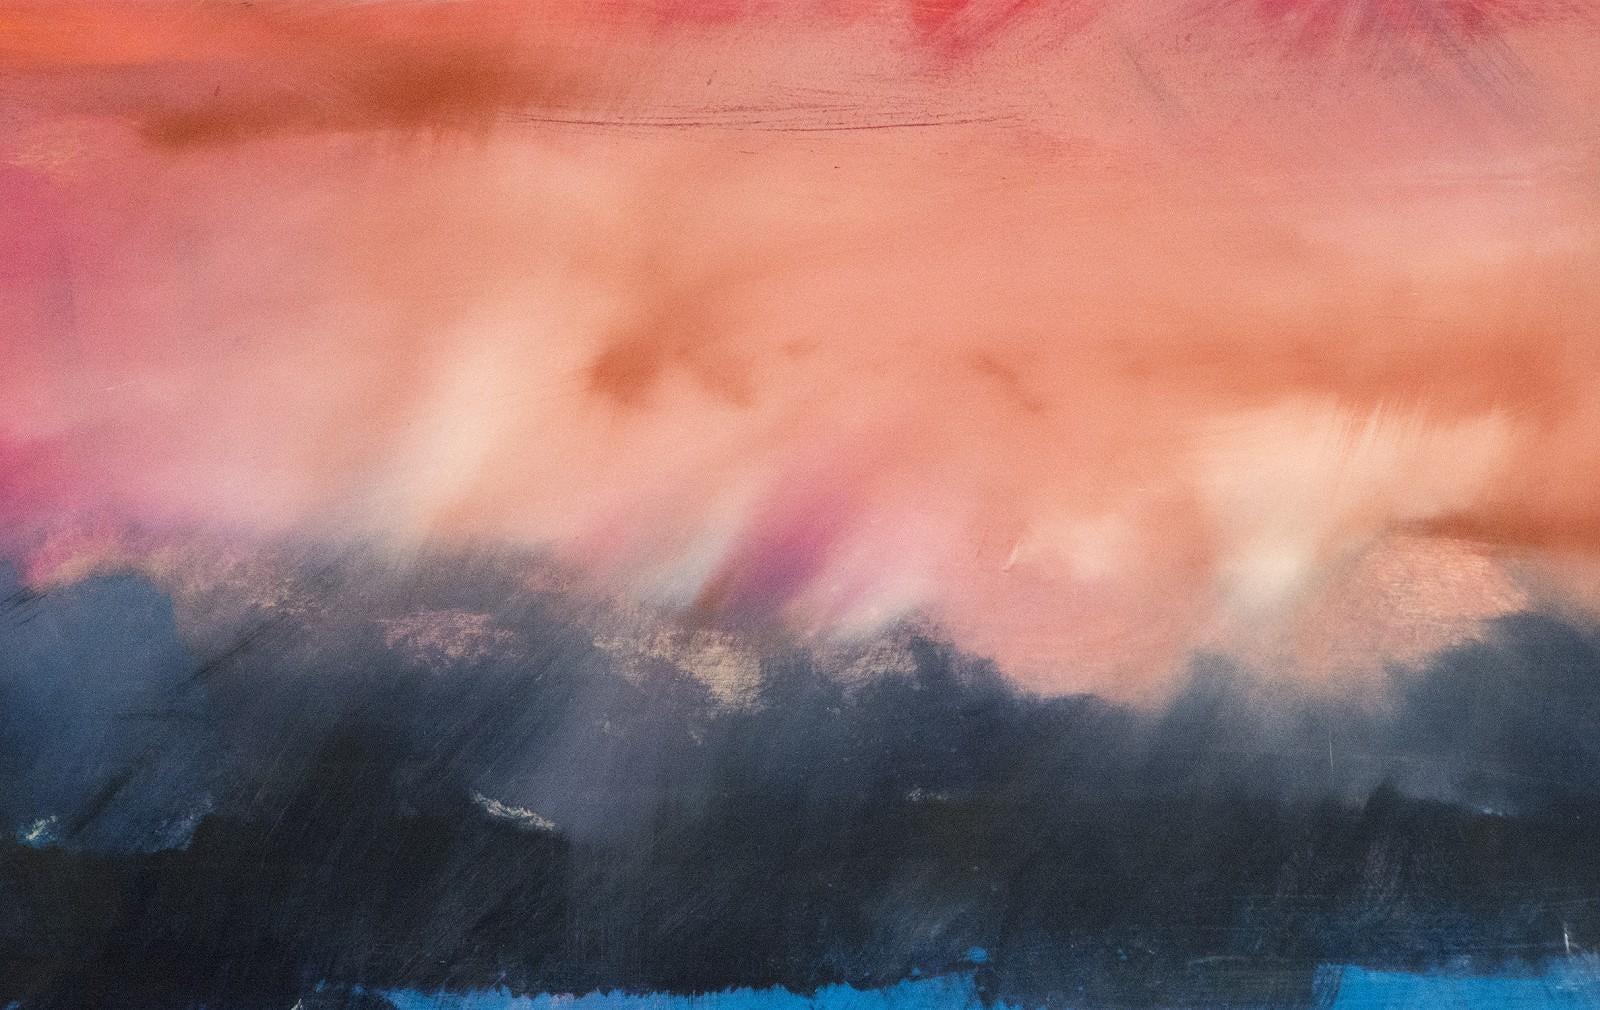 Auf diesem gefühlvollen Gemälde von Jay Hodgins fällt ein feuriger Himmel in Karminrot und Karminrot auf einen Horizont aus dunkelvioletten Hügeln und einem Streifen azurblauen Meeres. Töne von heißem Orange, die den Vordergrund in dieser